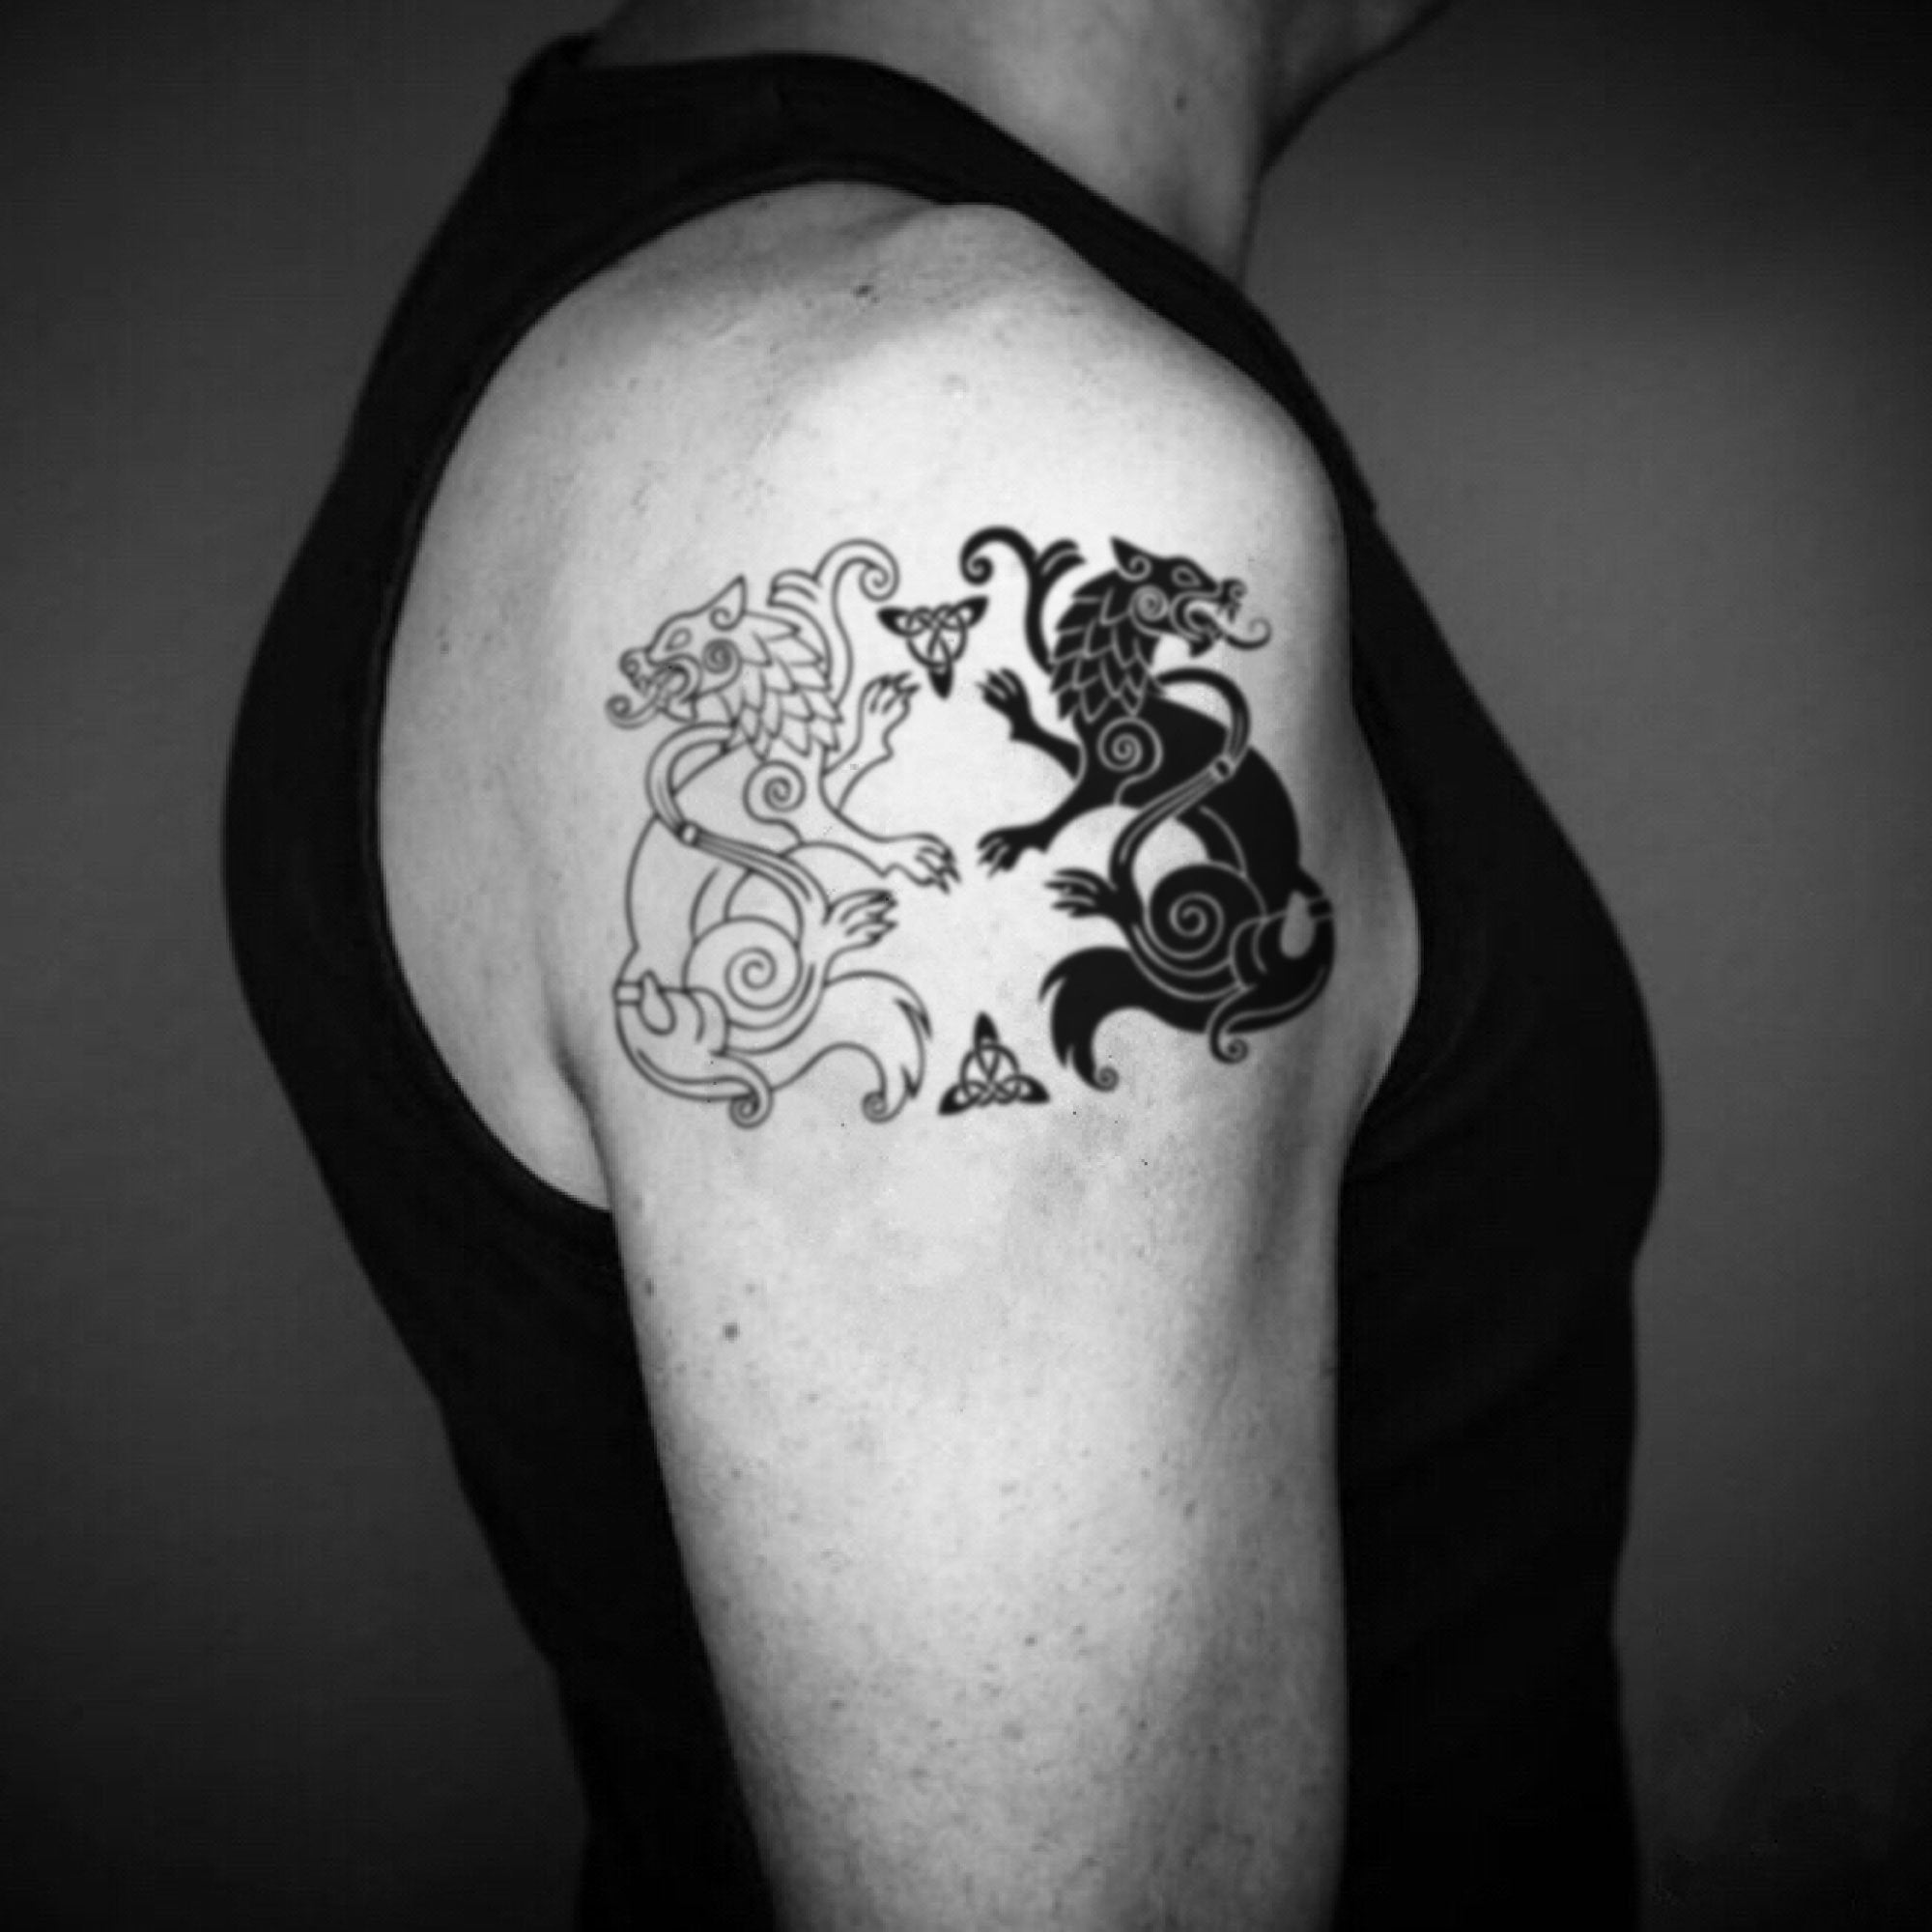 Odin Wodin Norse Mythology God Ravens Wolves Temporary Tattoo Set | eBay